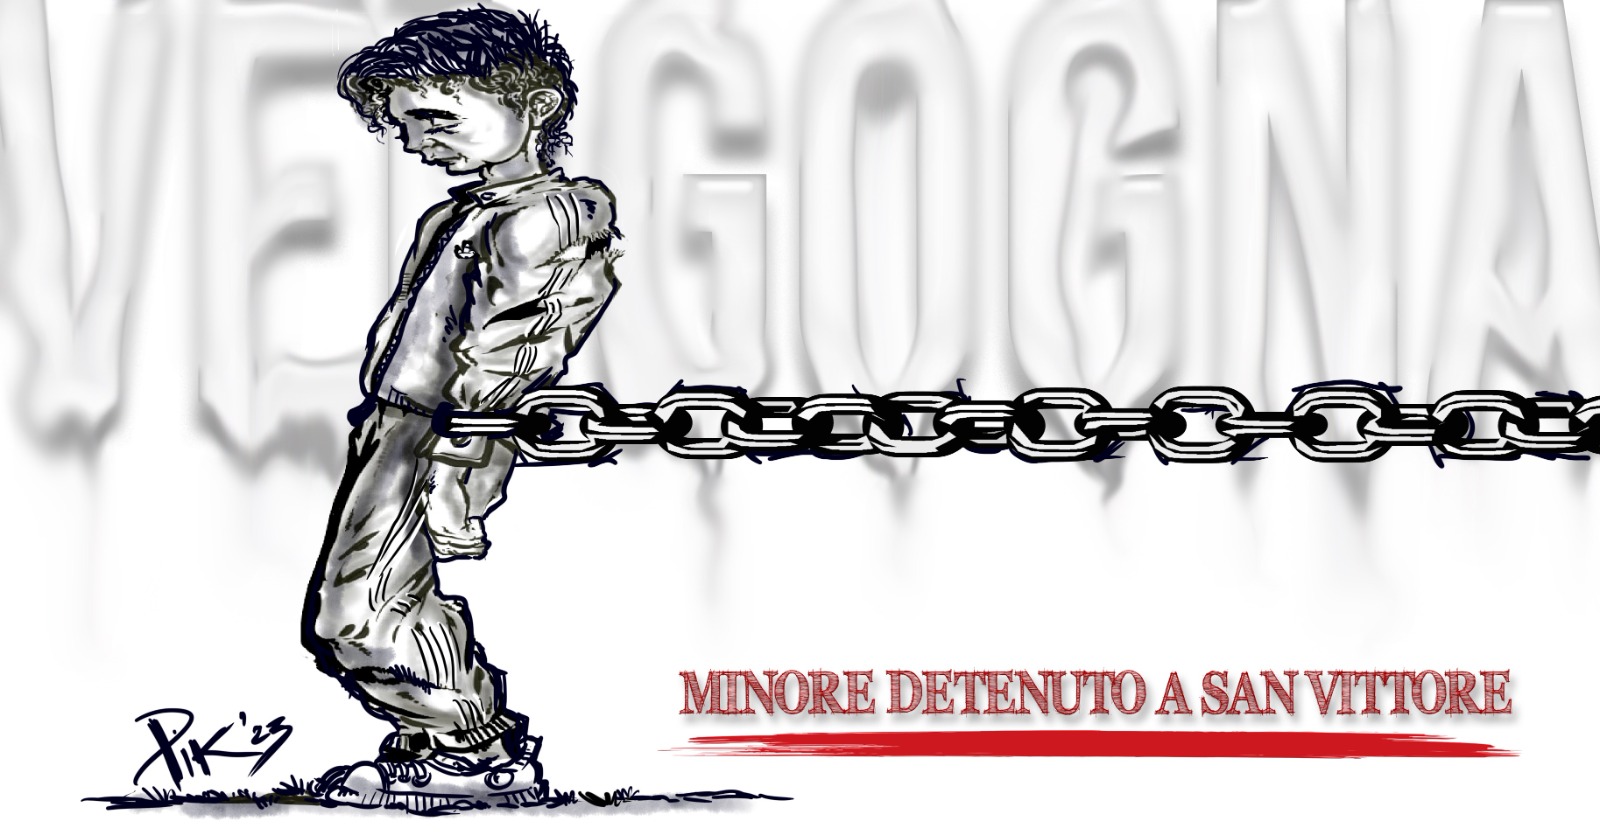 Mancano posti al carcere minorile: minore detenuto a San Vittore